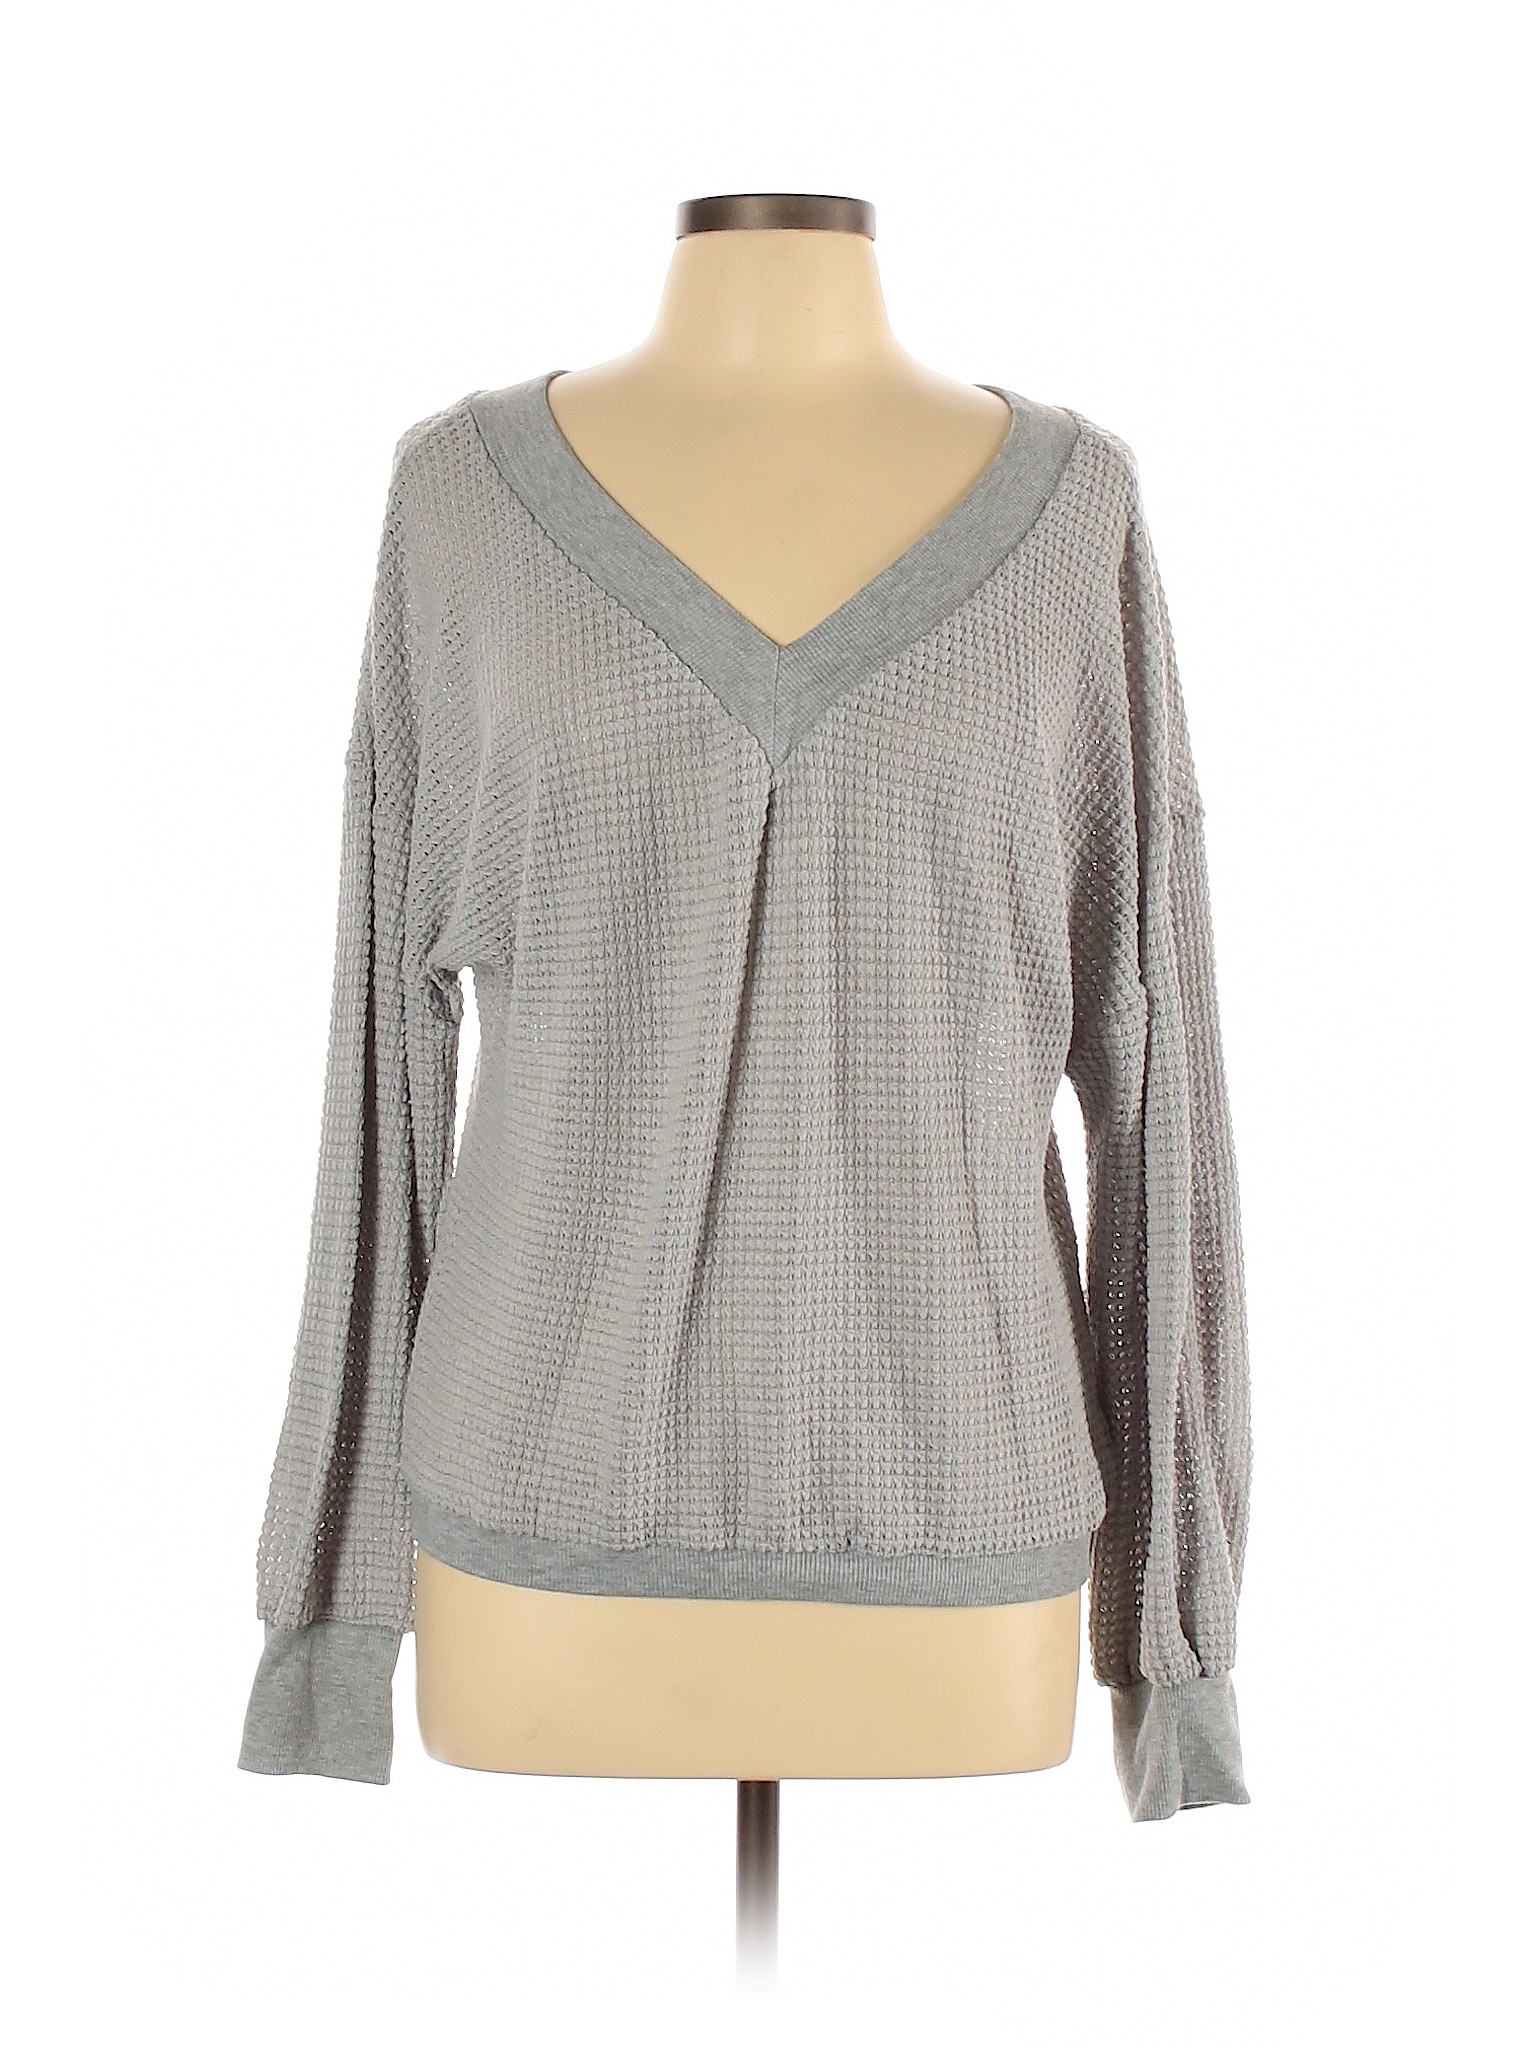 Unbranded Women Gray Sweatshirt L | eBay